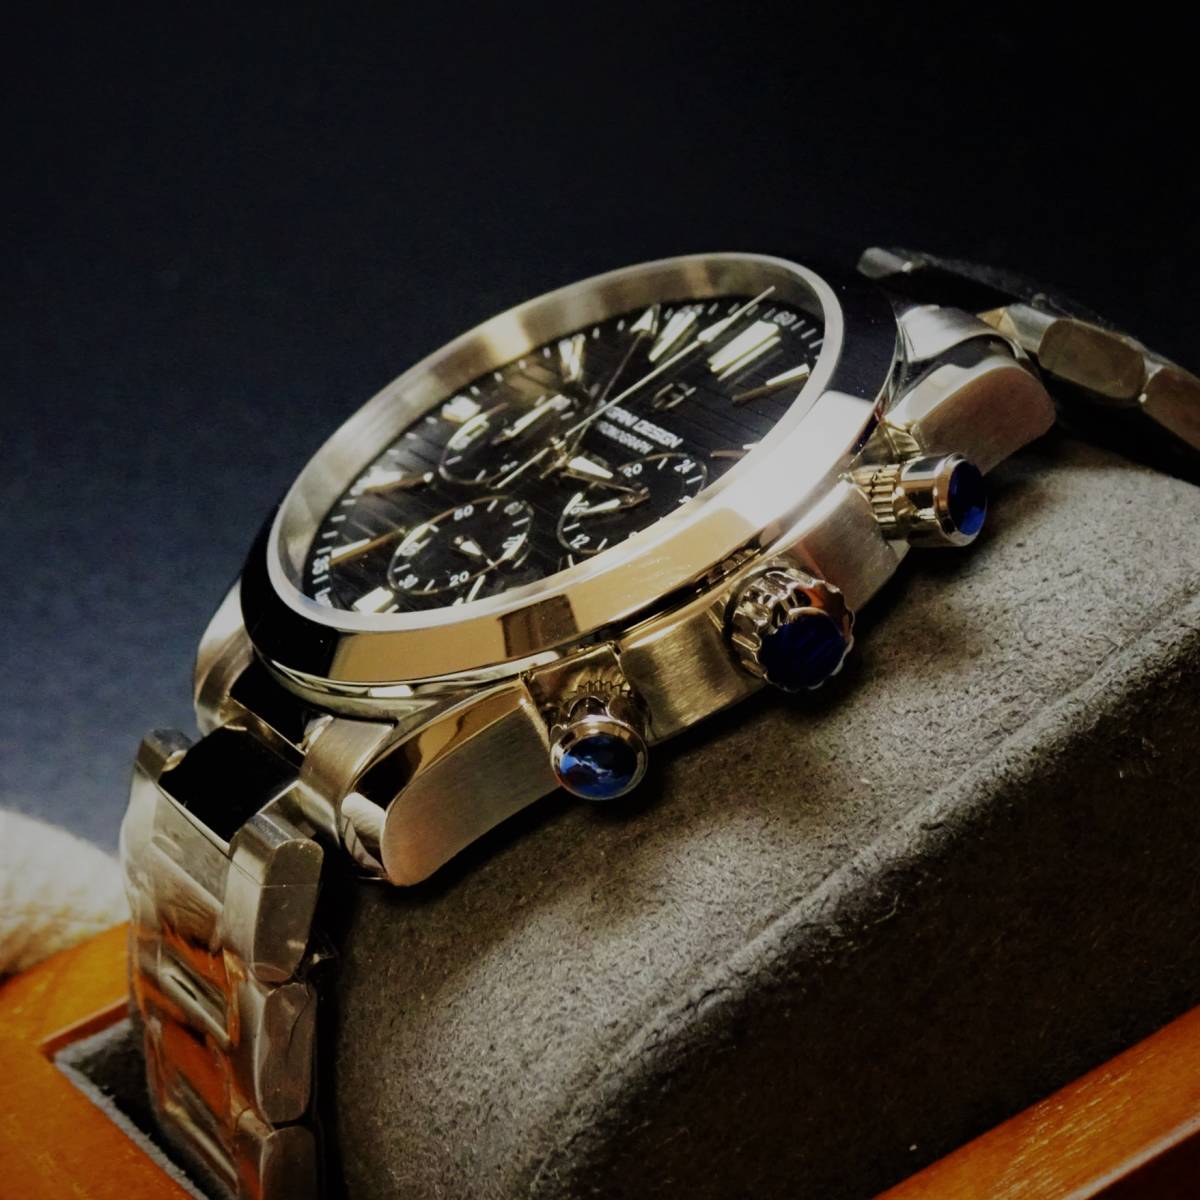 1円〓新品〓メンズクオーツ式腕時計セイコー製VK63ムーブメント搭載オマージュウオッチPAGANI DESIGN〓ブラックPD-1712_画像2